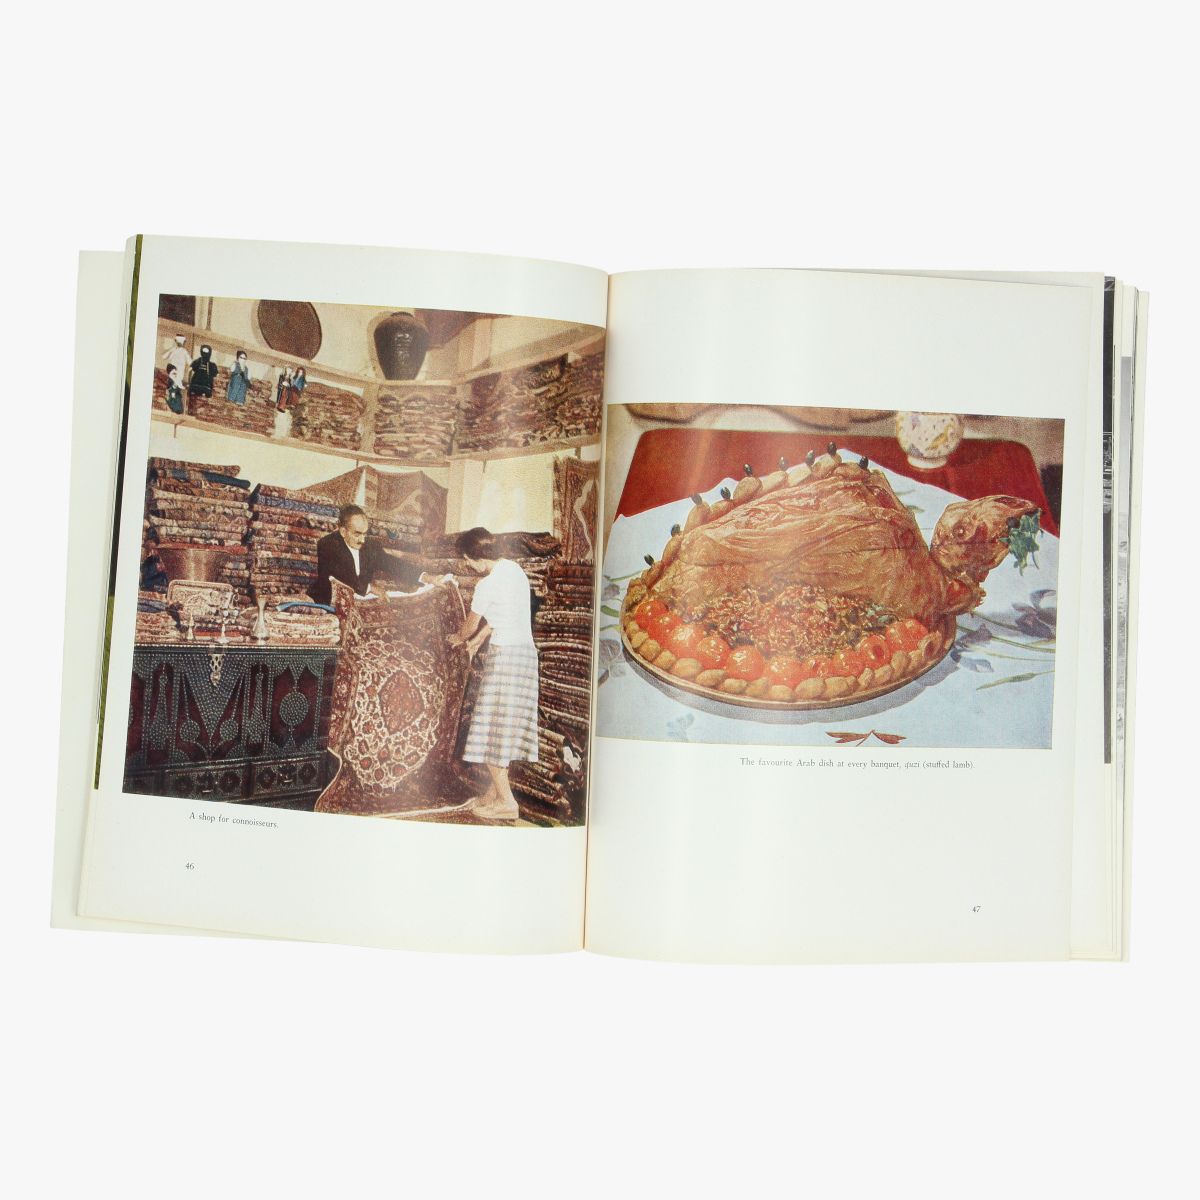 Afbeeldingen van expo 58 boek  iraq in pictures 